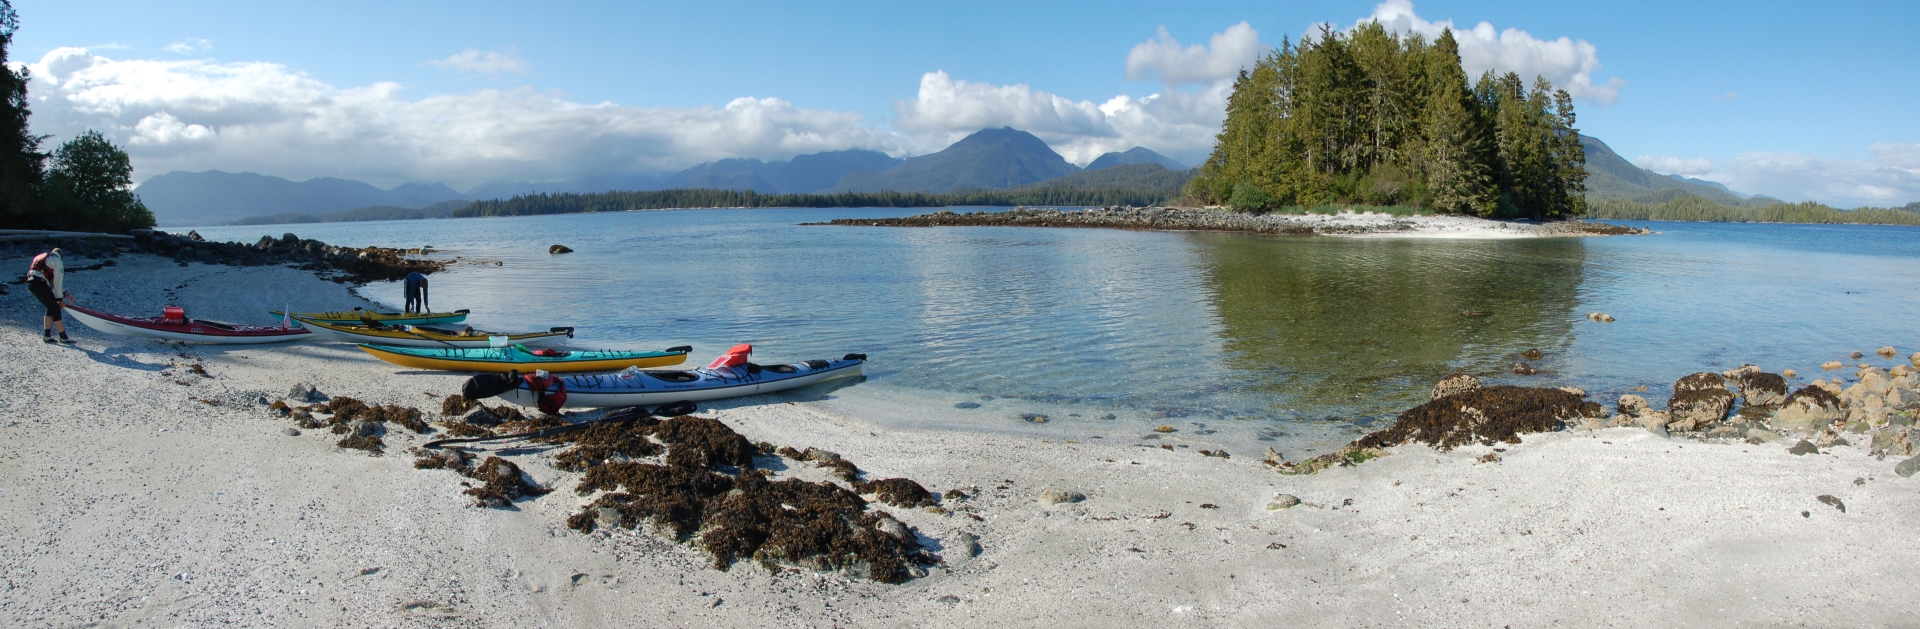 Remote Vancouver Island beaches - Canada